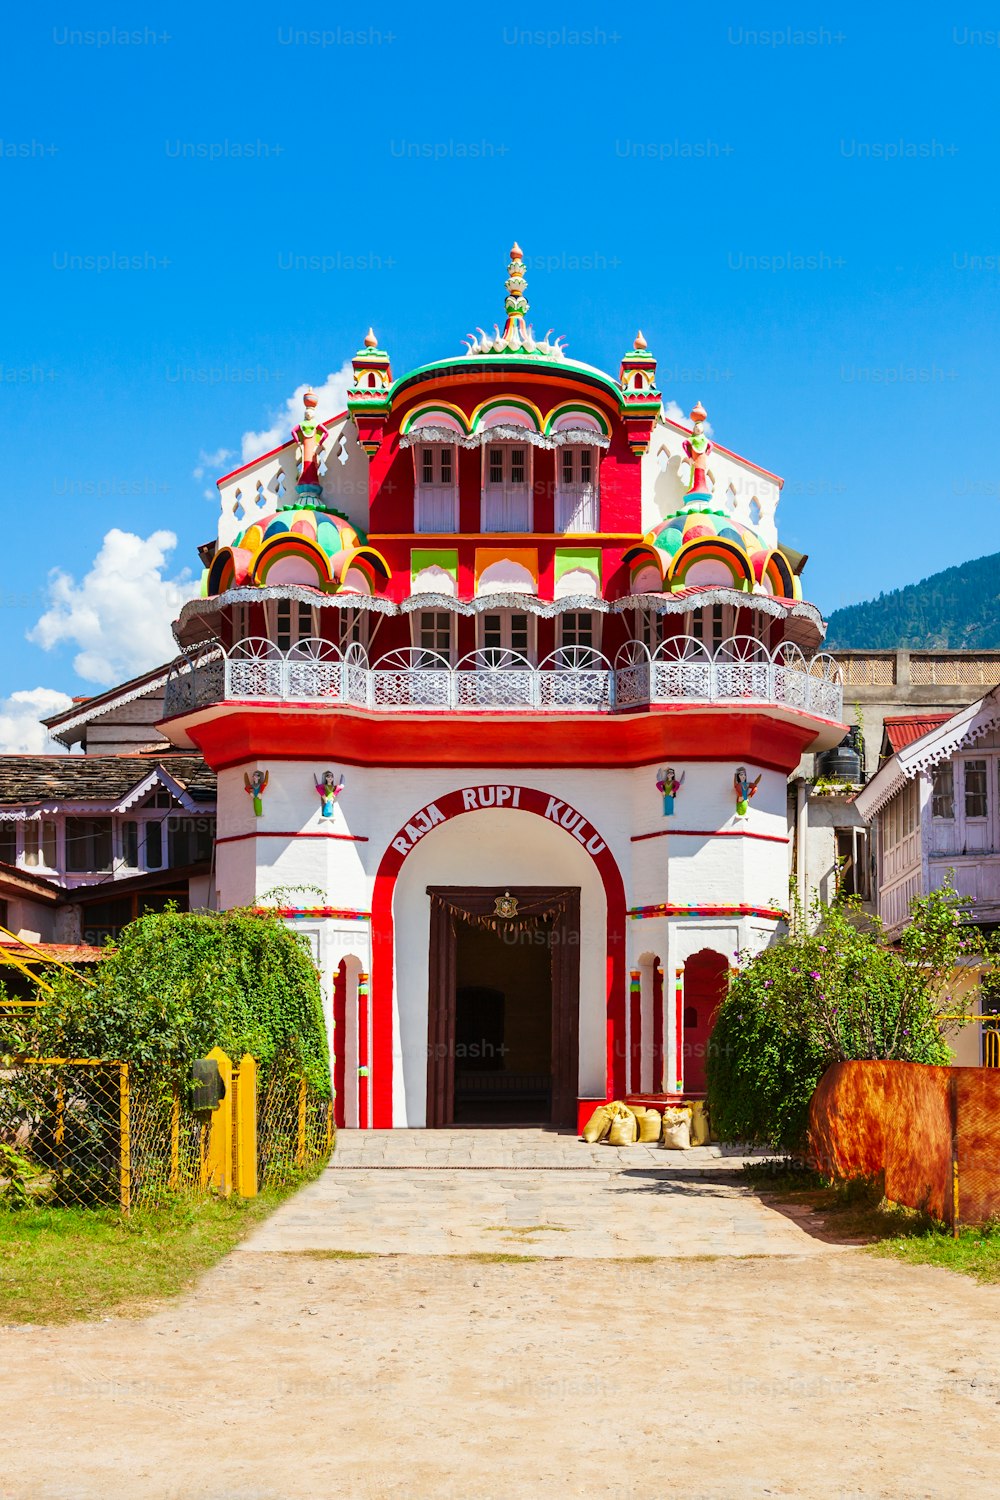 Palazzo di Raja Rupi nella città di Kullu, stato dell'Himachal Pradesh in India